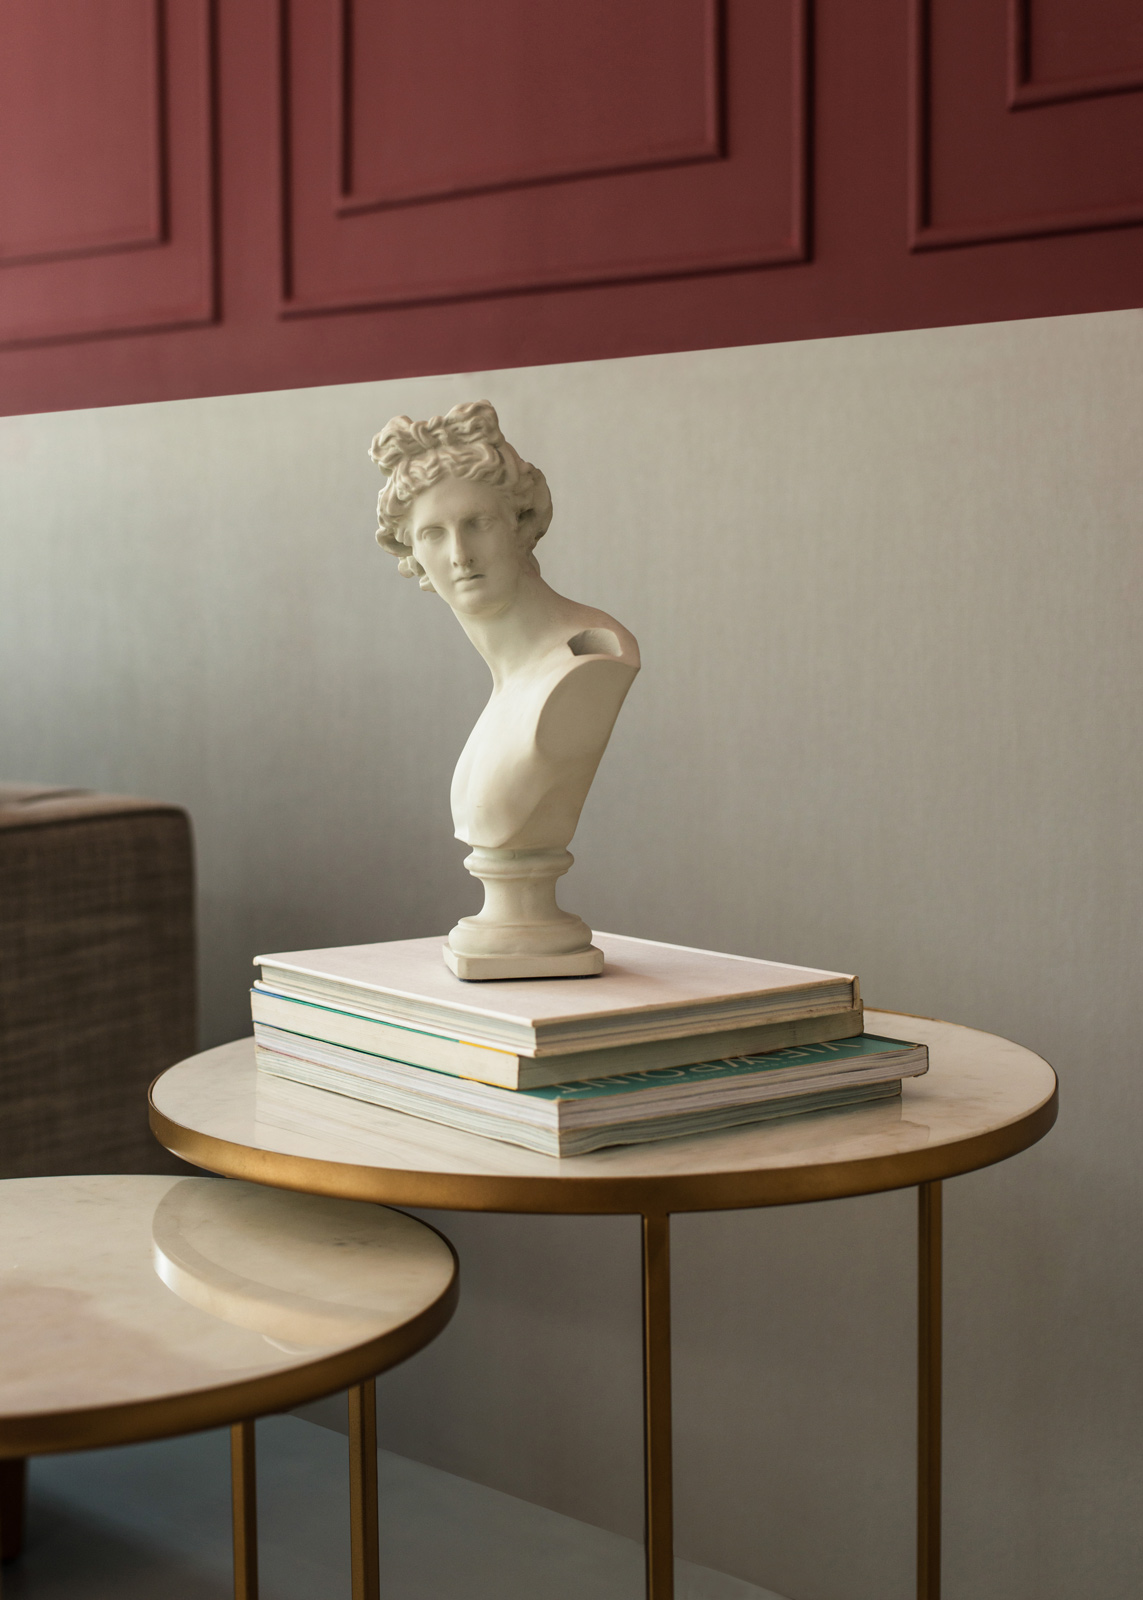 Torso sculpture for living room interiors - Beautiful Homes